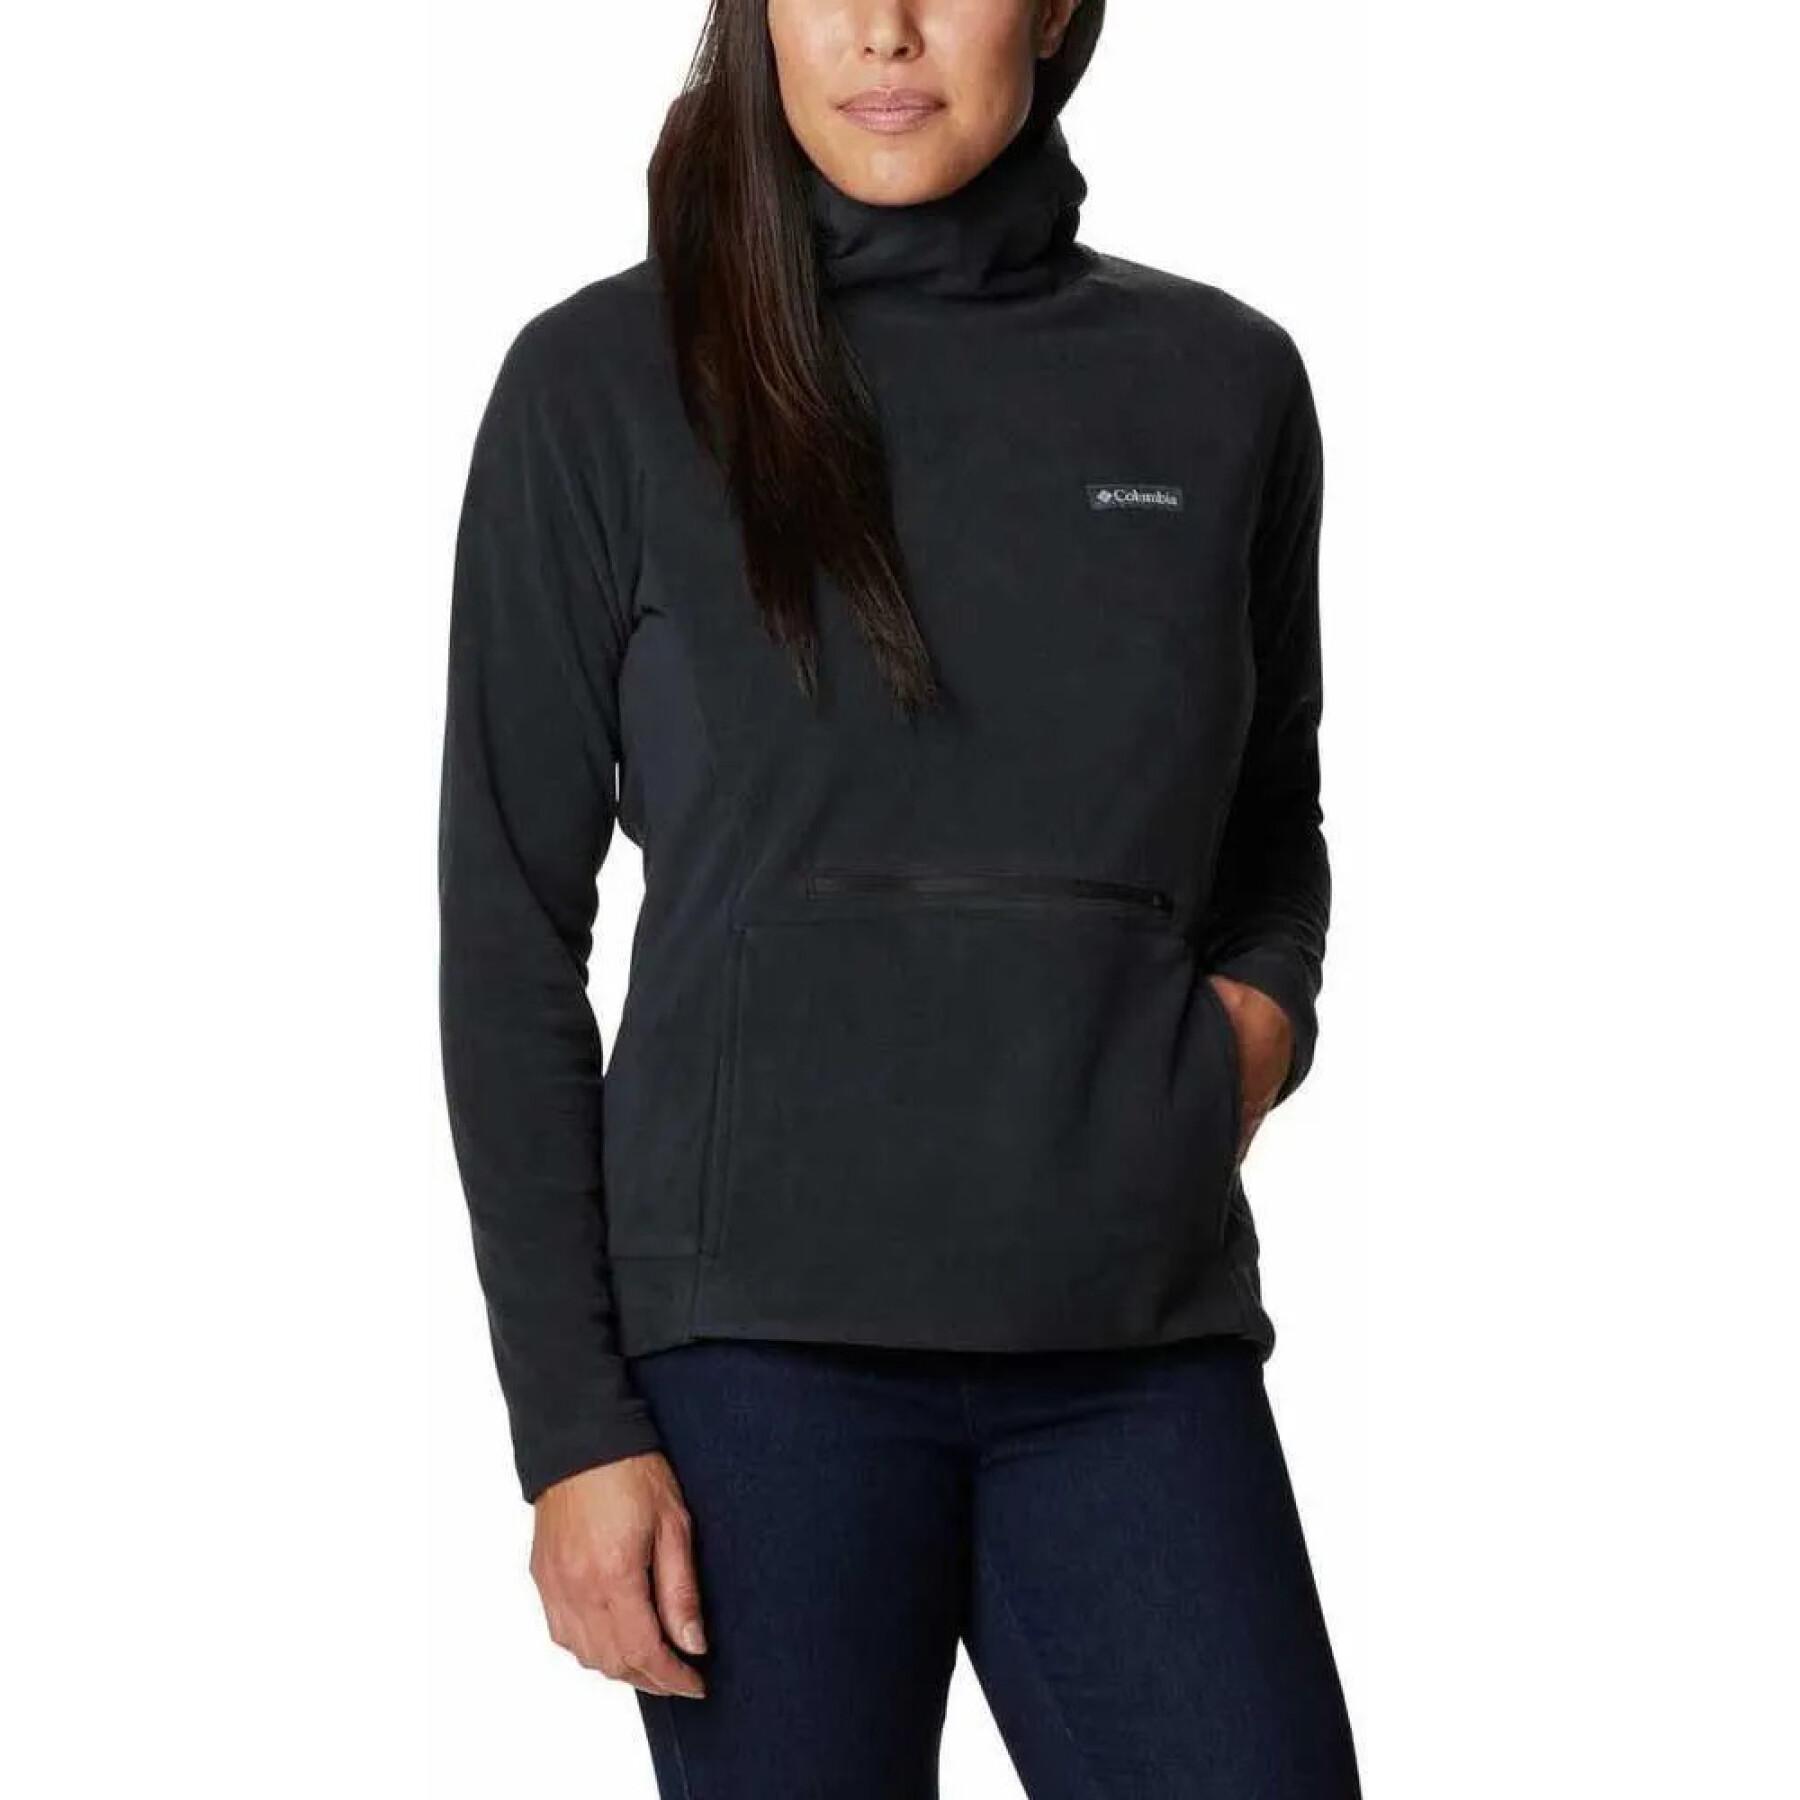 Women's hooded sweatshirt Columbia Ali Peak Fleece